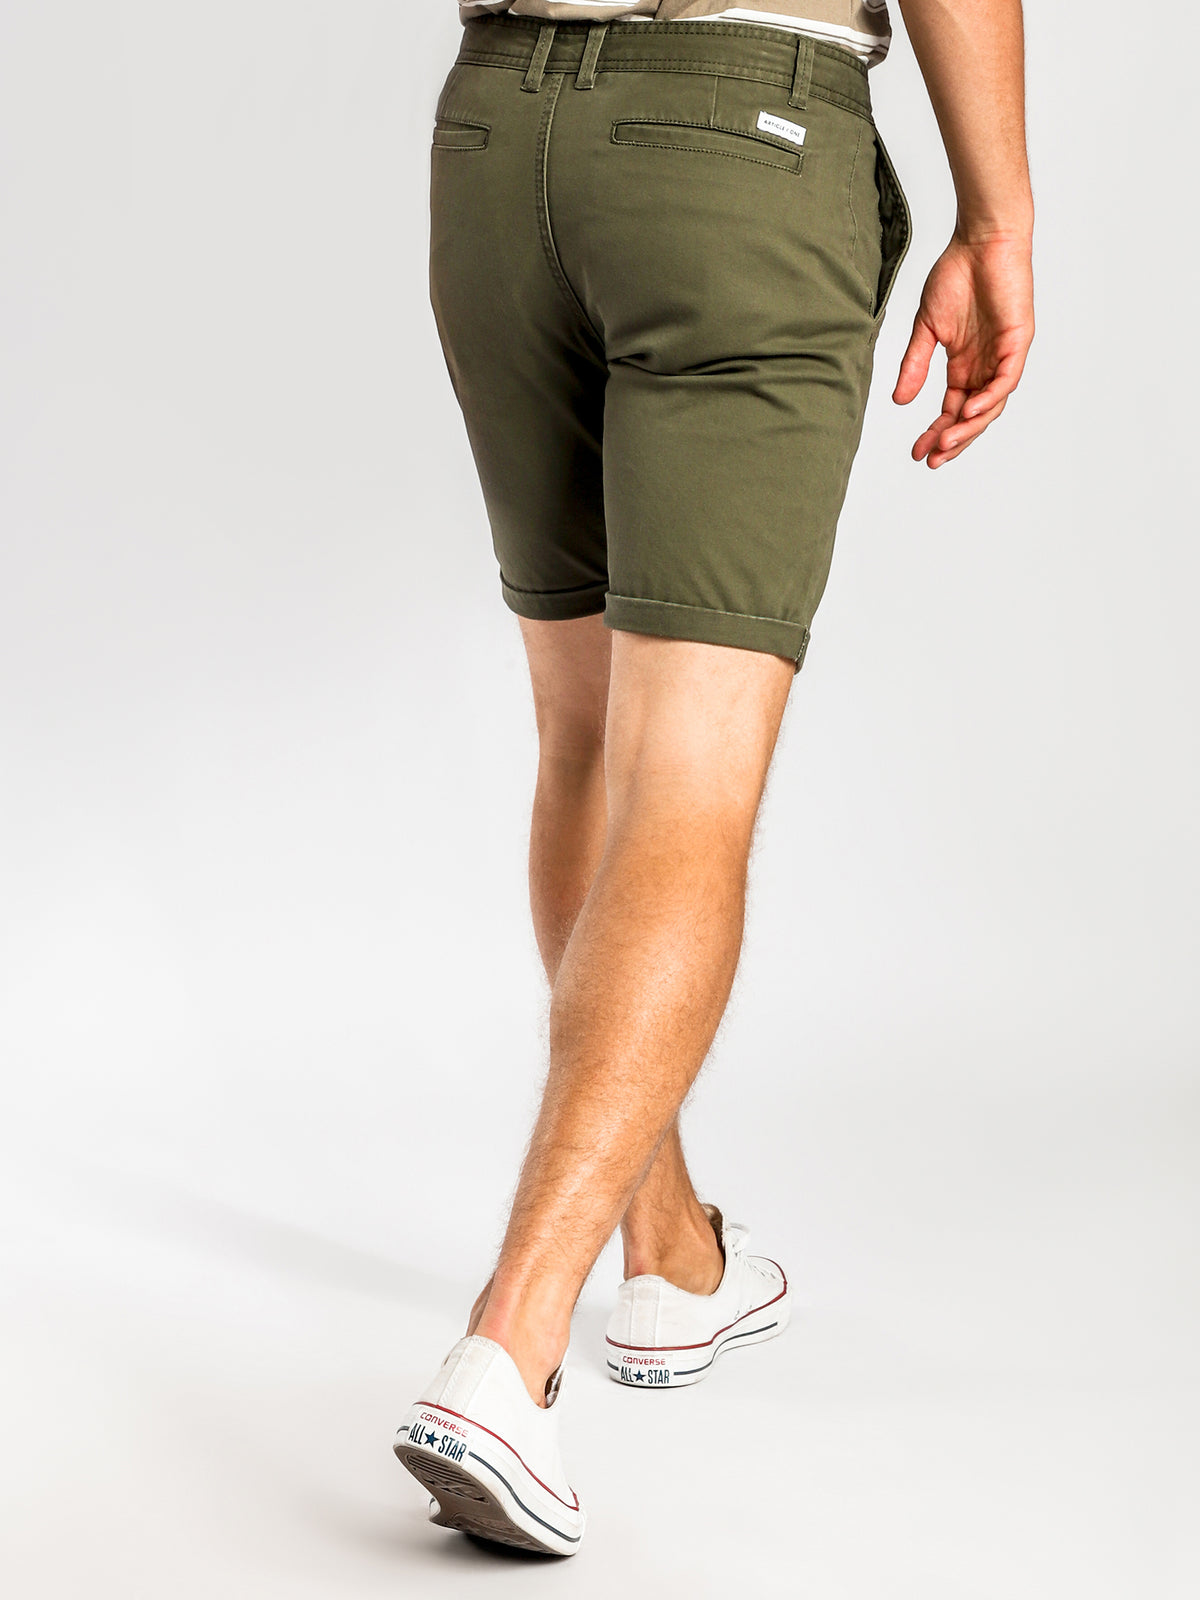 Malabar Chino Shorts in Army Green